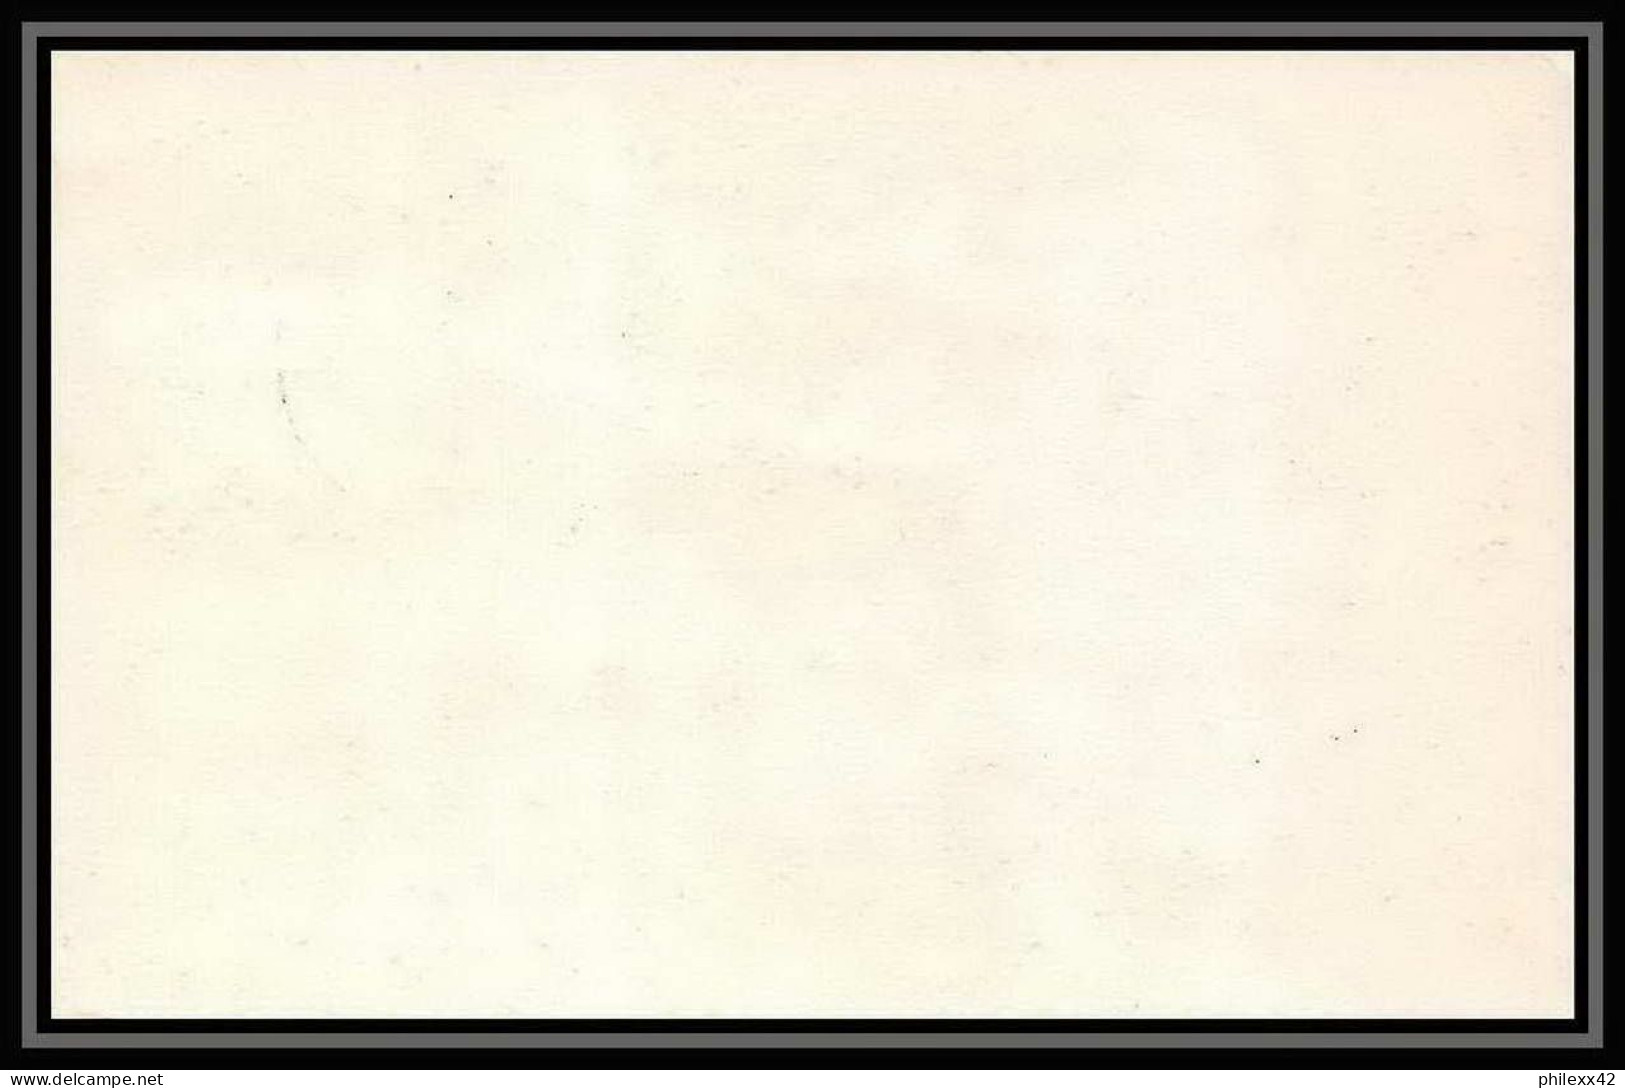 1733/ Afrique Du Sud (RSA) Entier Stationery Carte Postale (postcard) 1971 Pour Berne Suisse (Swiss) - Covers & Documents